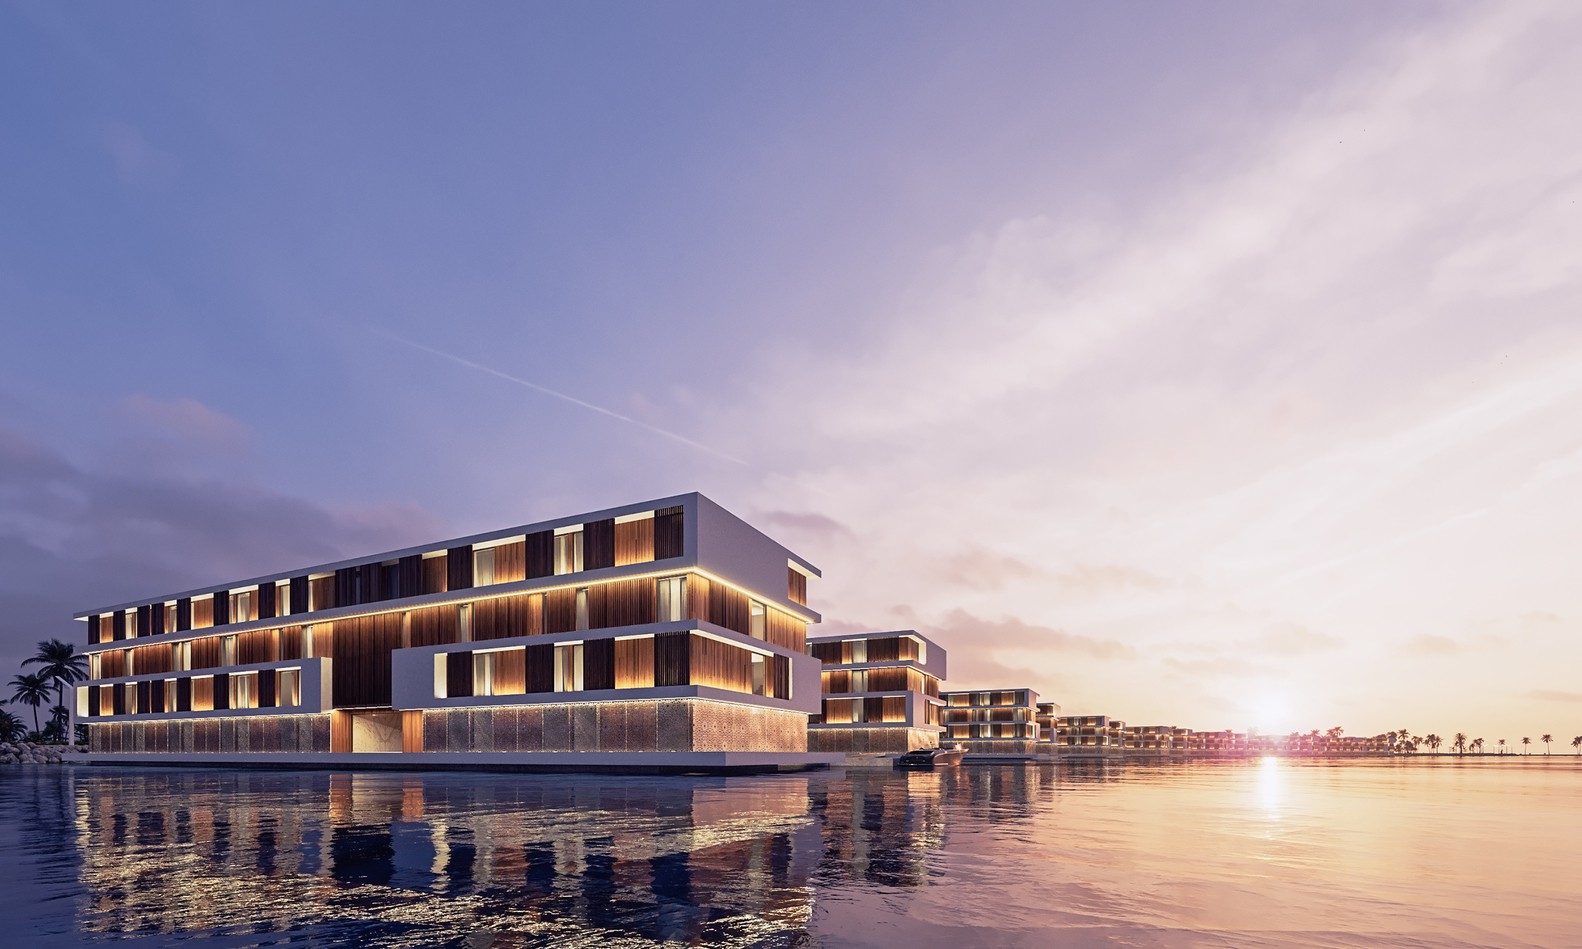 Catar constrói hotéis flutuantes em ilha artificial para Copa de 2022 (Foto: Divulgação)